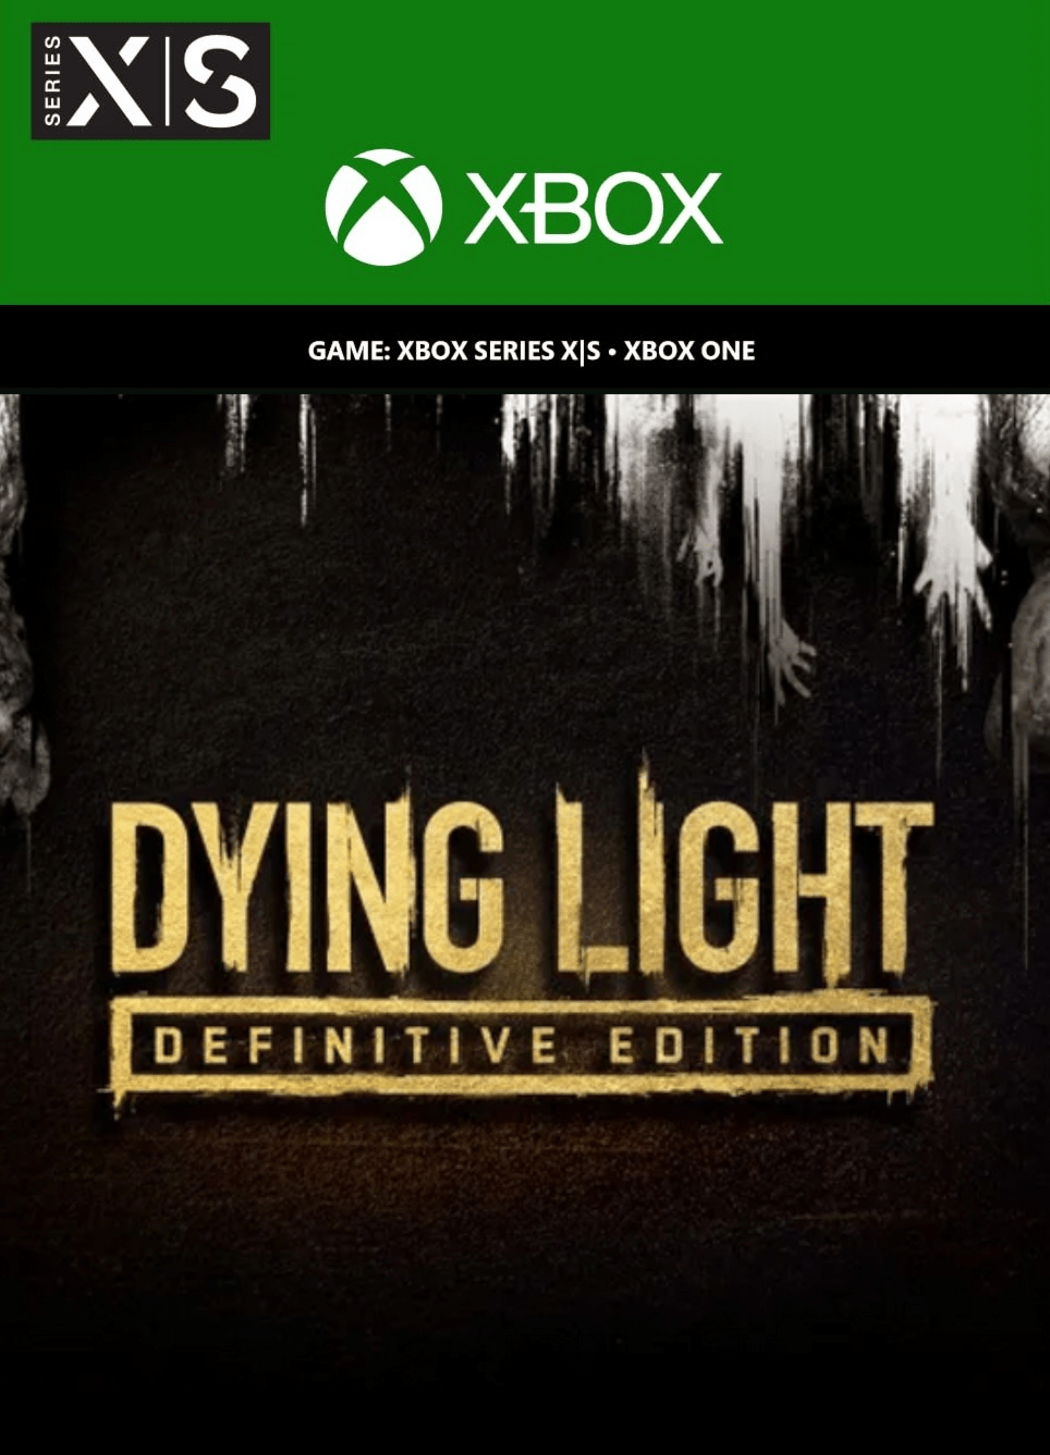 Dead Island, Dying Light: veja os melhores jogos de Zumbis para